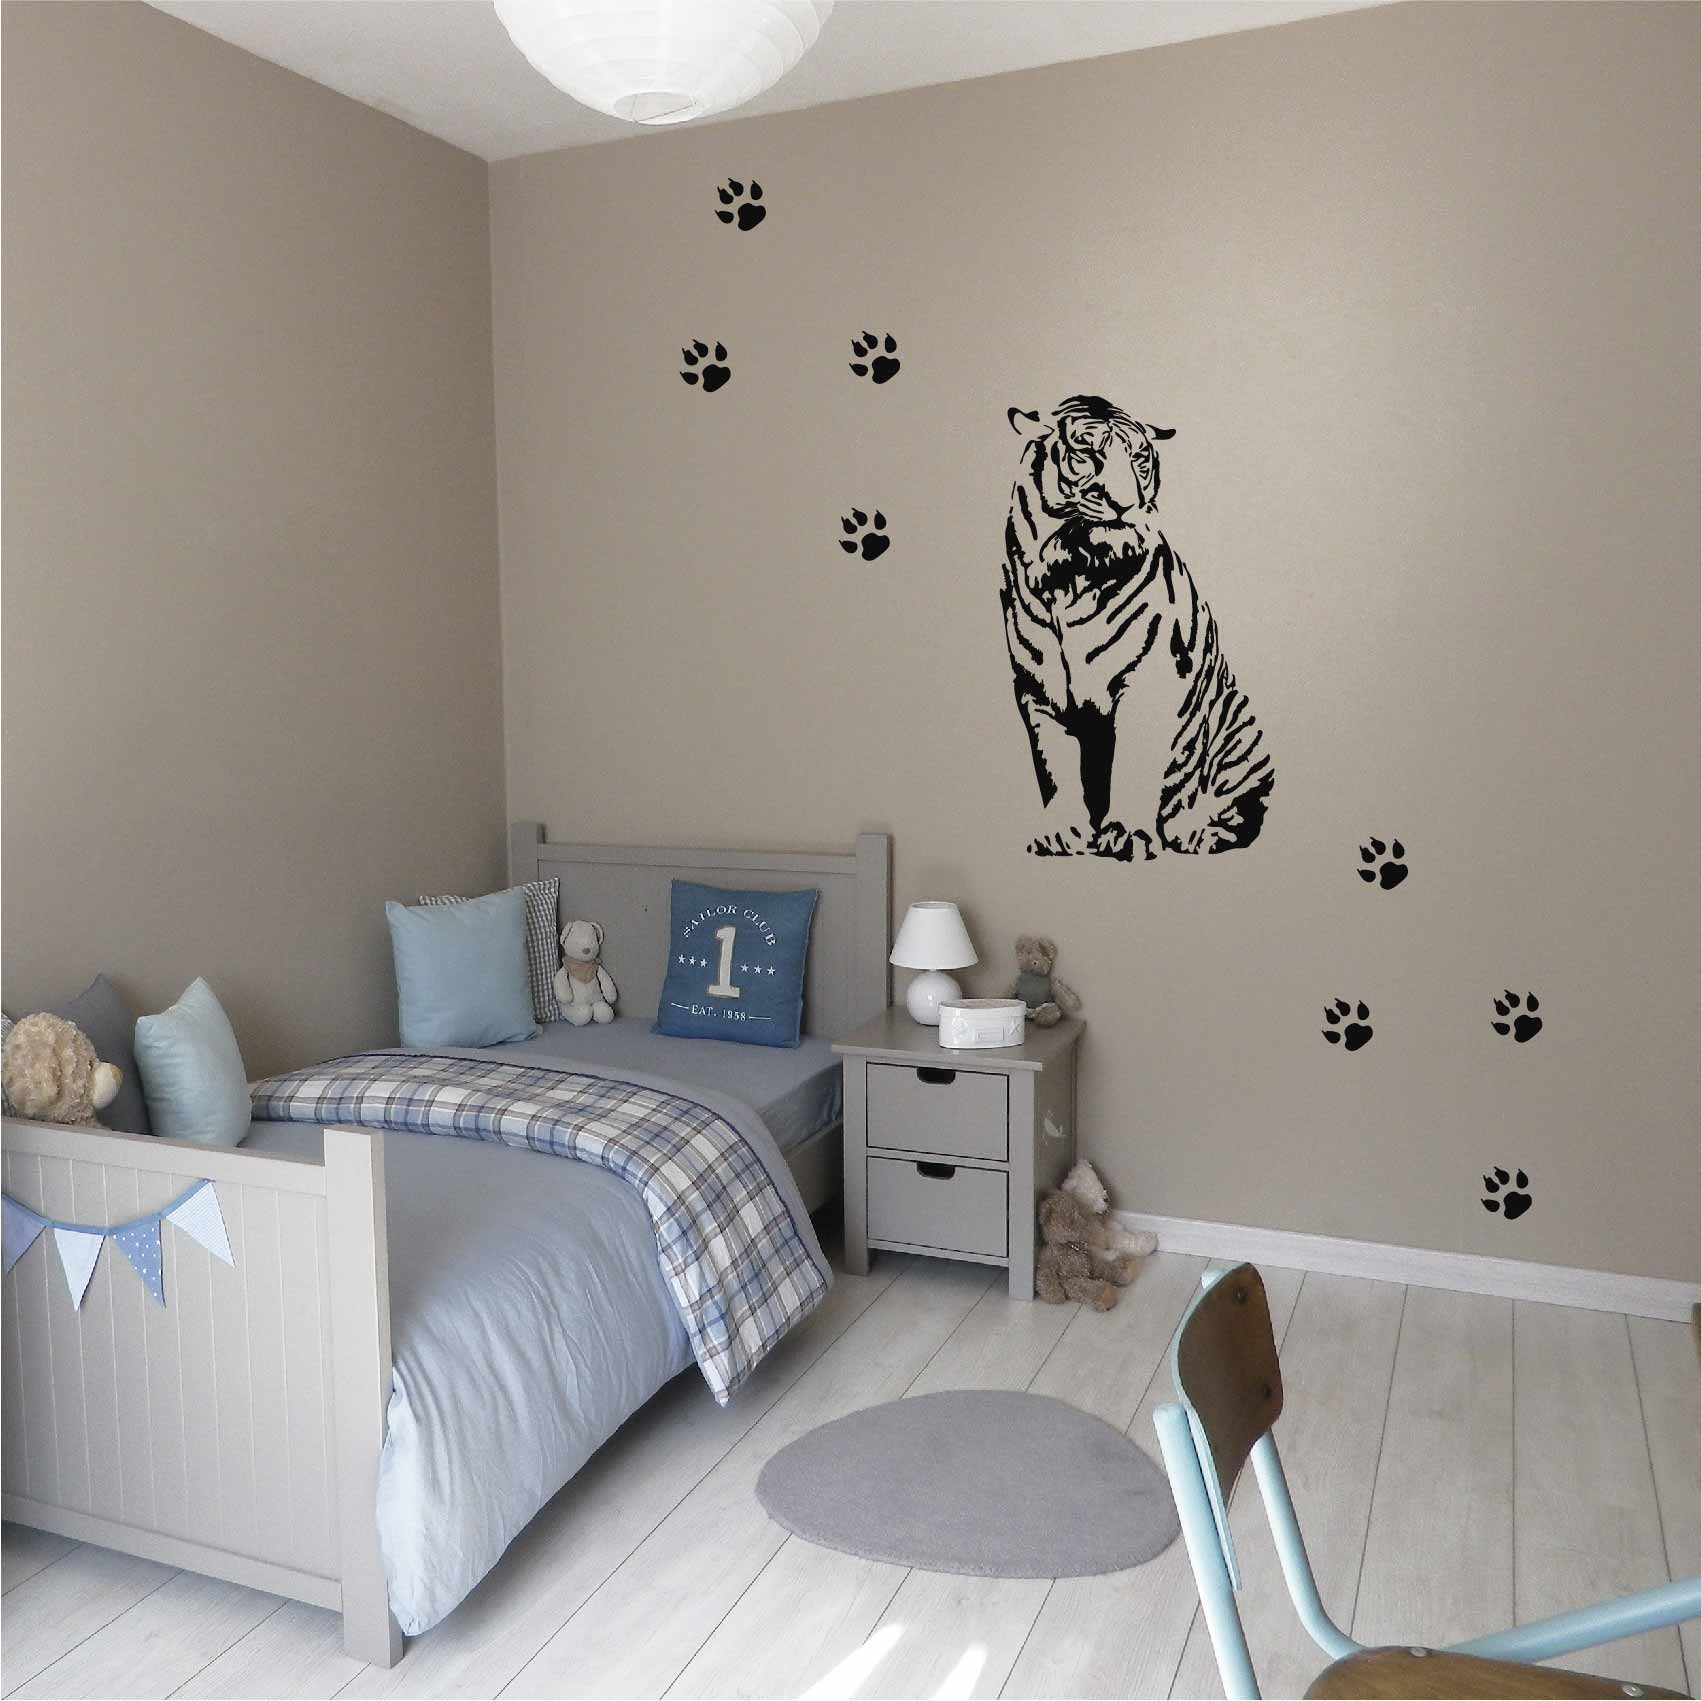 stickers-tigre-traces-ref2tigre-autocollant-muraux-animaux-sticker-mural-deco-salon-chambre-enfant